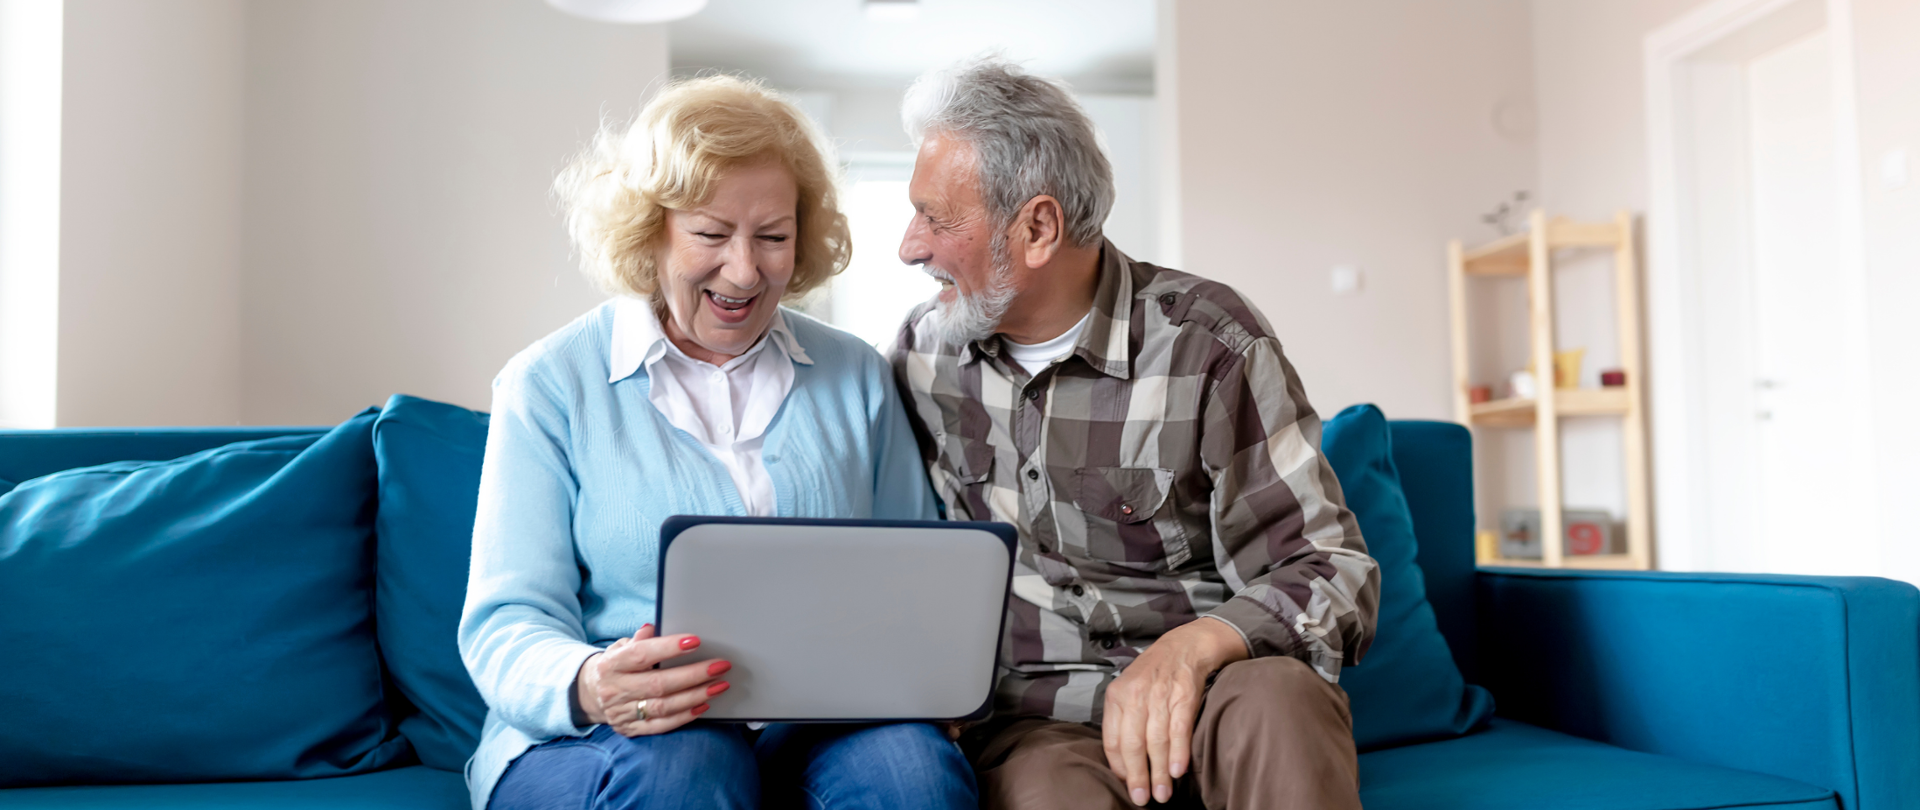 Uśmiechnięci seniorzy - kobieta i mężczyzna, siedzą na kanapie. Kobieta trzyma w ręku laptop, mężczyzna patrzy na kobietę.